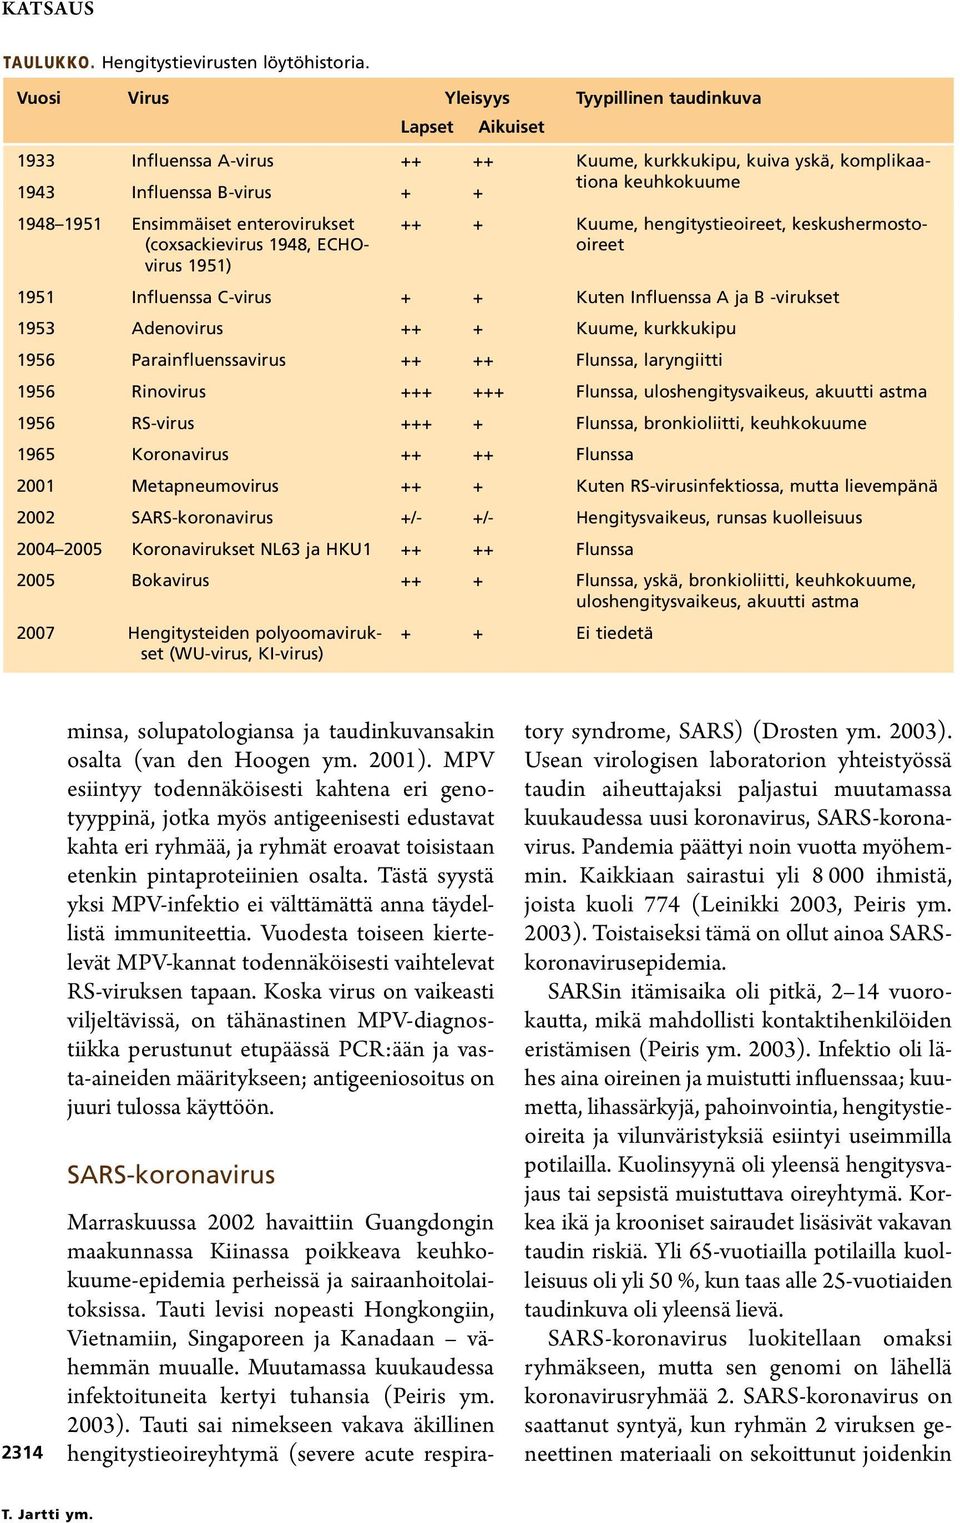 enterovirukset (coxsackievirus 1948, ECHOvirus 1951) ++ + Kuume, hengitystieoireet, keskushermostooireet 1951 Influenssa C-virus + + Kuten Influenssa A ja B -virukset 1953 Adenovirus ++ + Kuume,